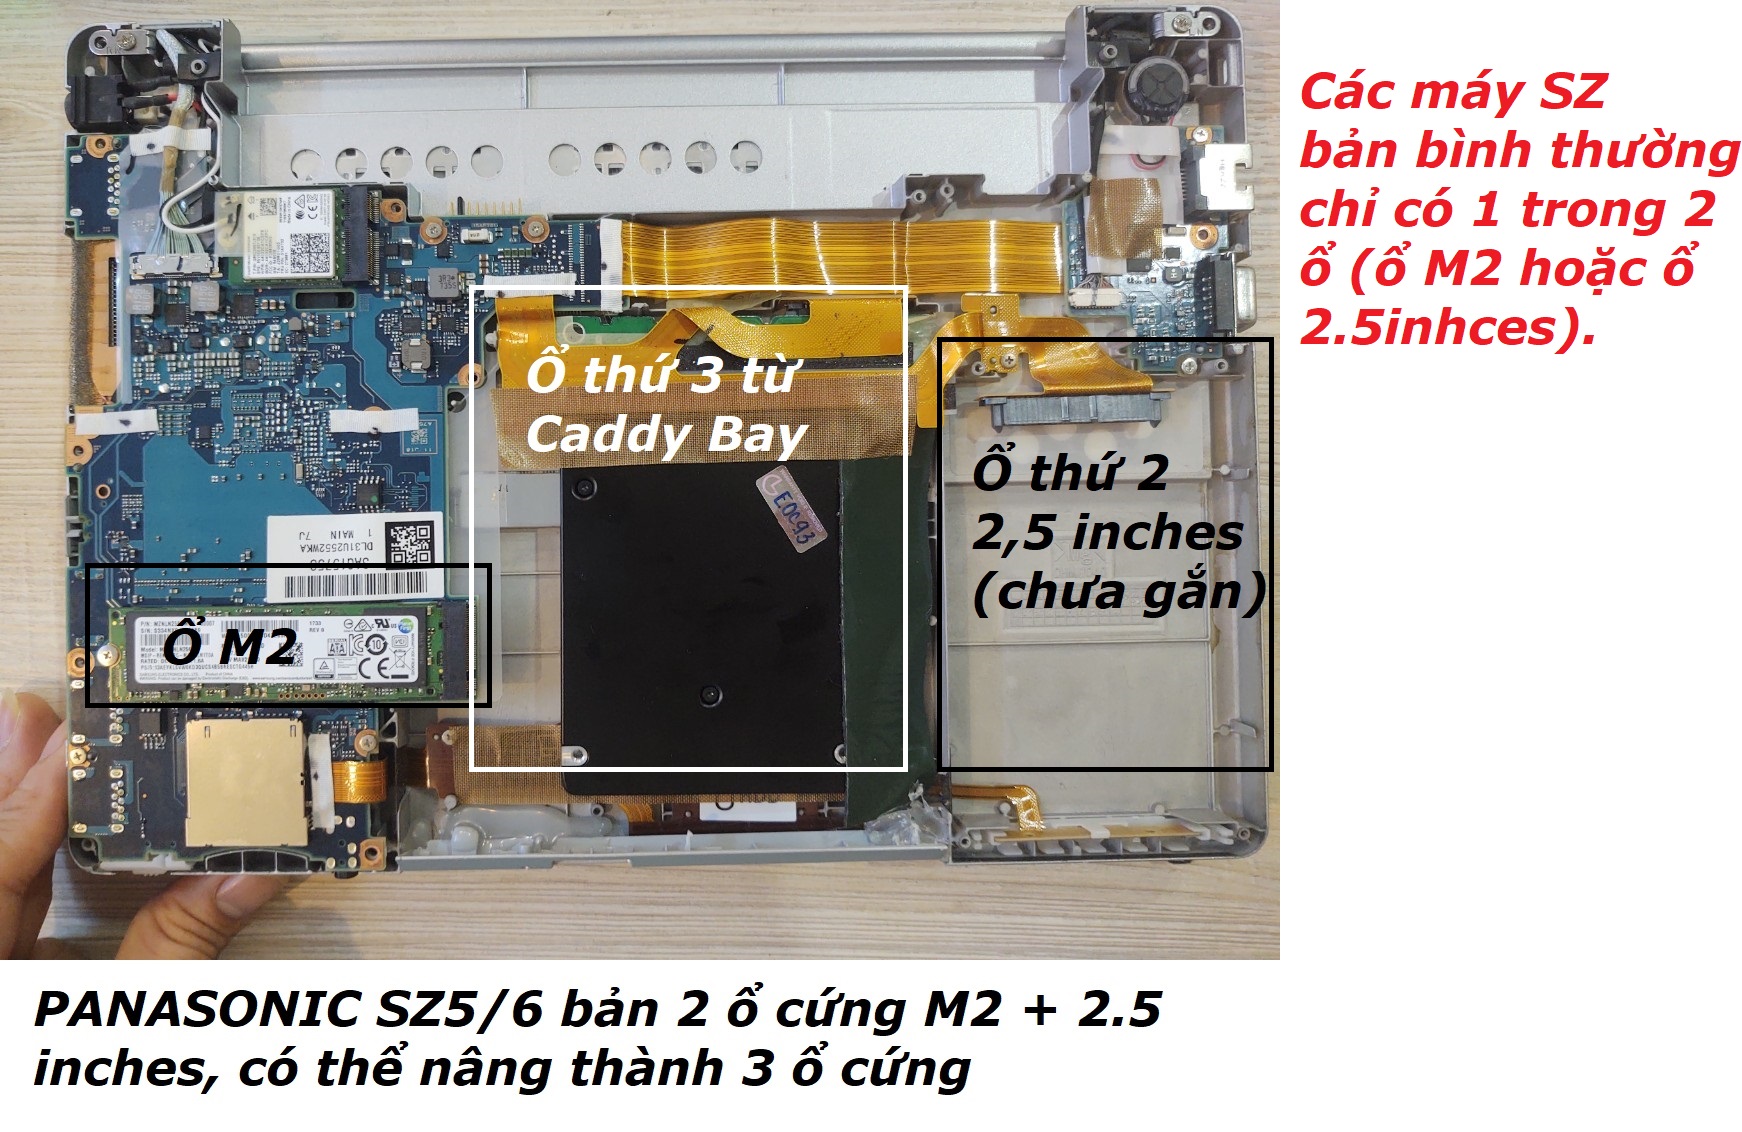 PC/タブレット ノートPC Panasonic CF-SZ6 : nặng chỉ 850 gam, gập 180 độ, siêu bền